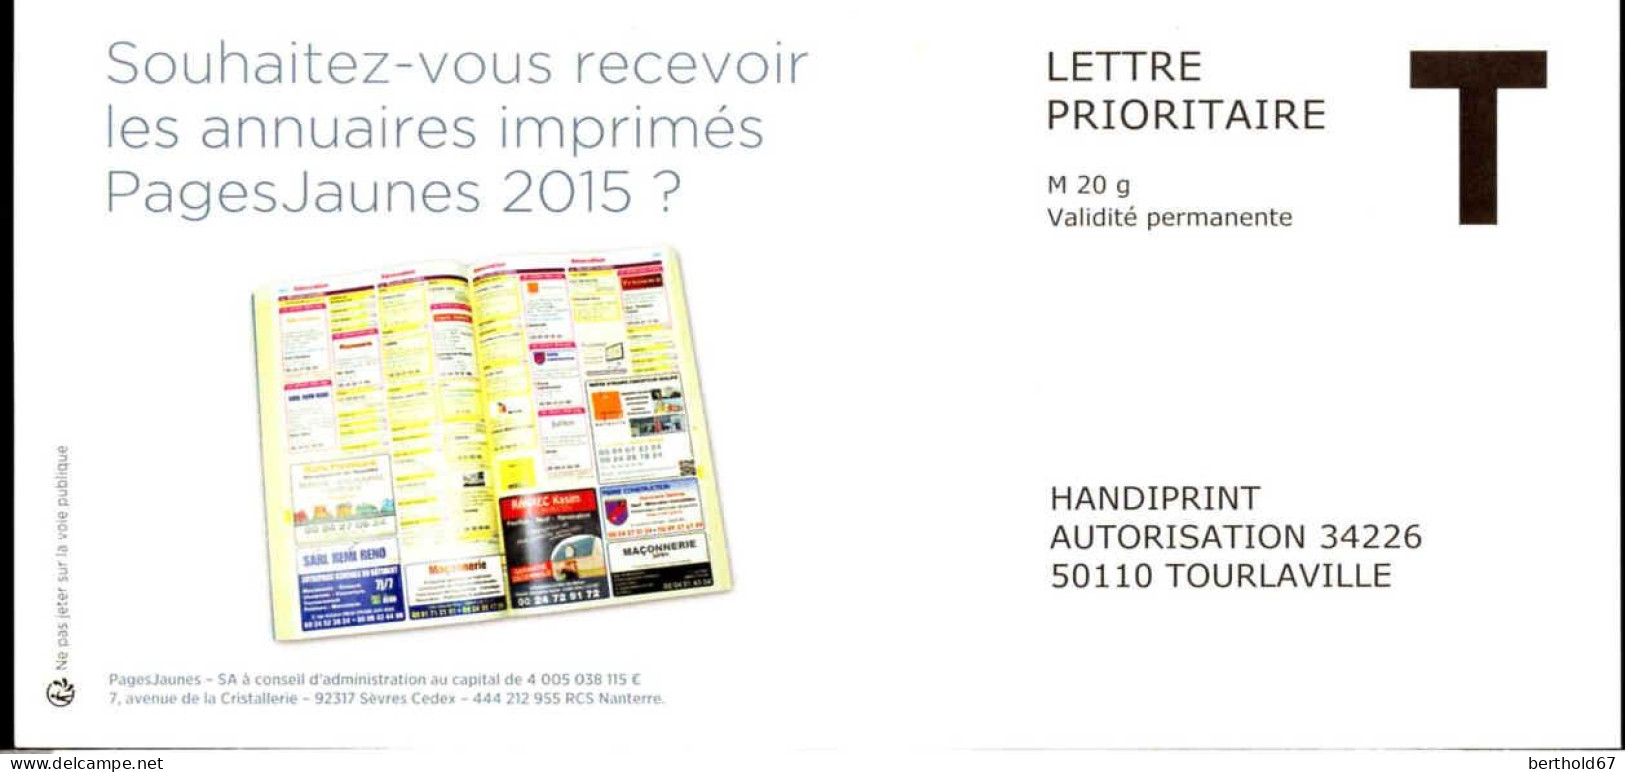 France Entier-P N** (7015) Handiprint Autorisation 34226 Lettre Prioritaire M20g V.perm - Kaarten/Brieven Antwoorden T